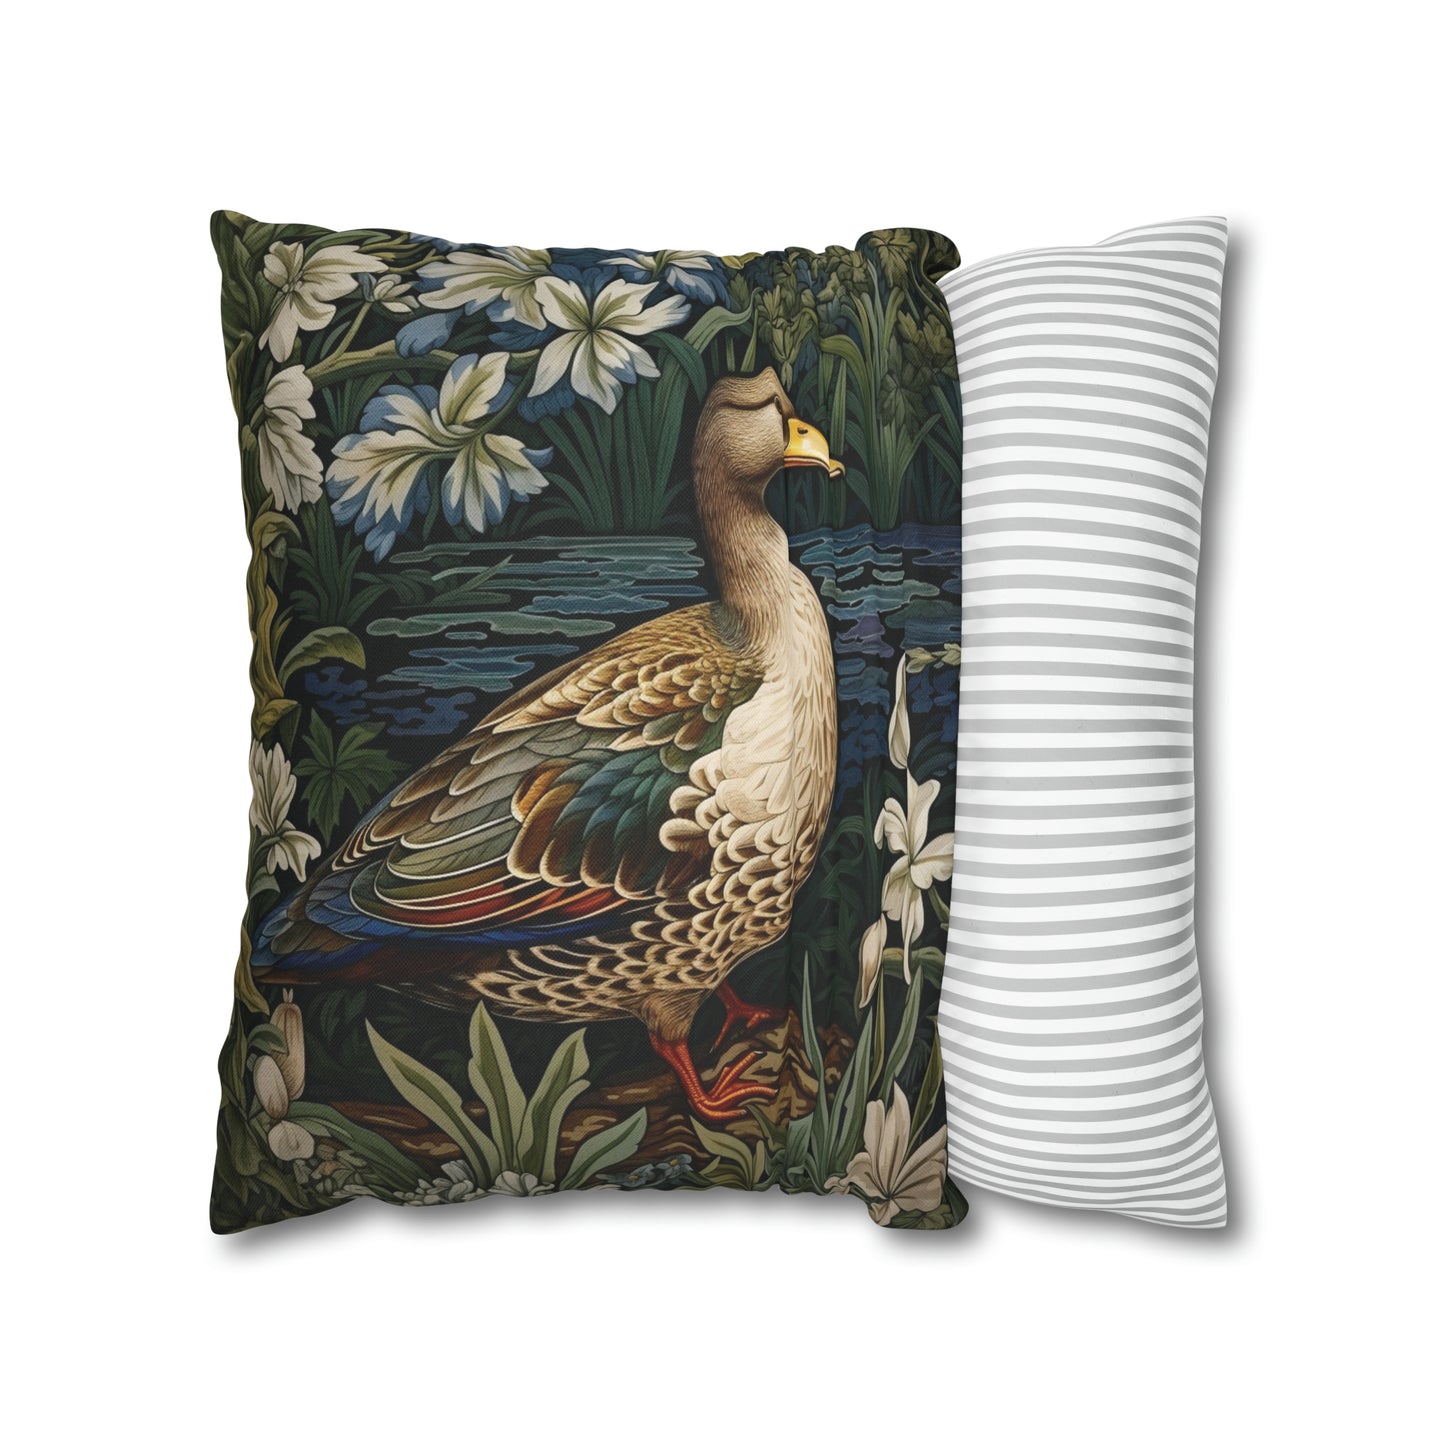 Duck in Garden Pillow William Morris Inspired